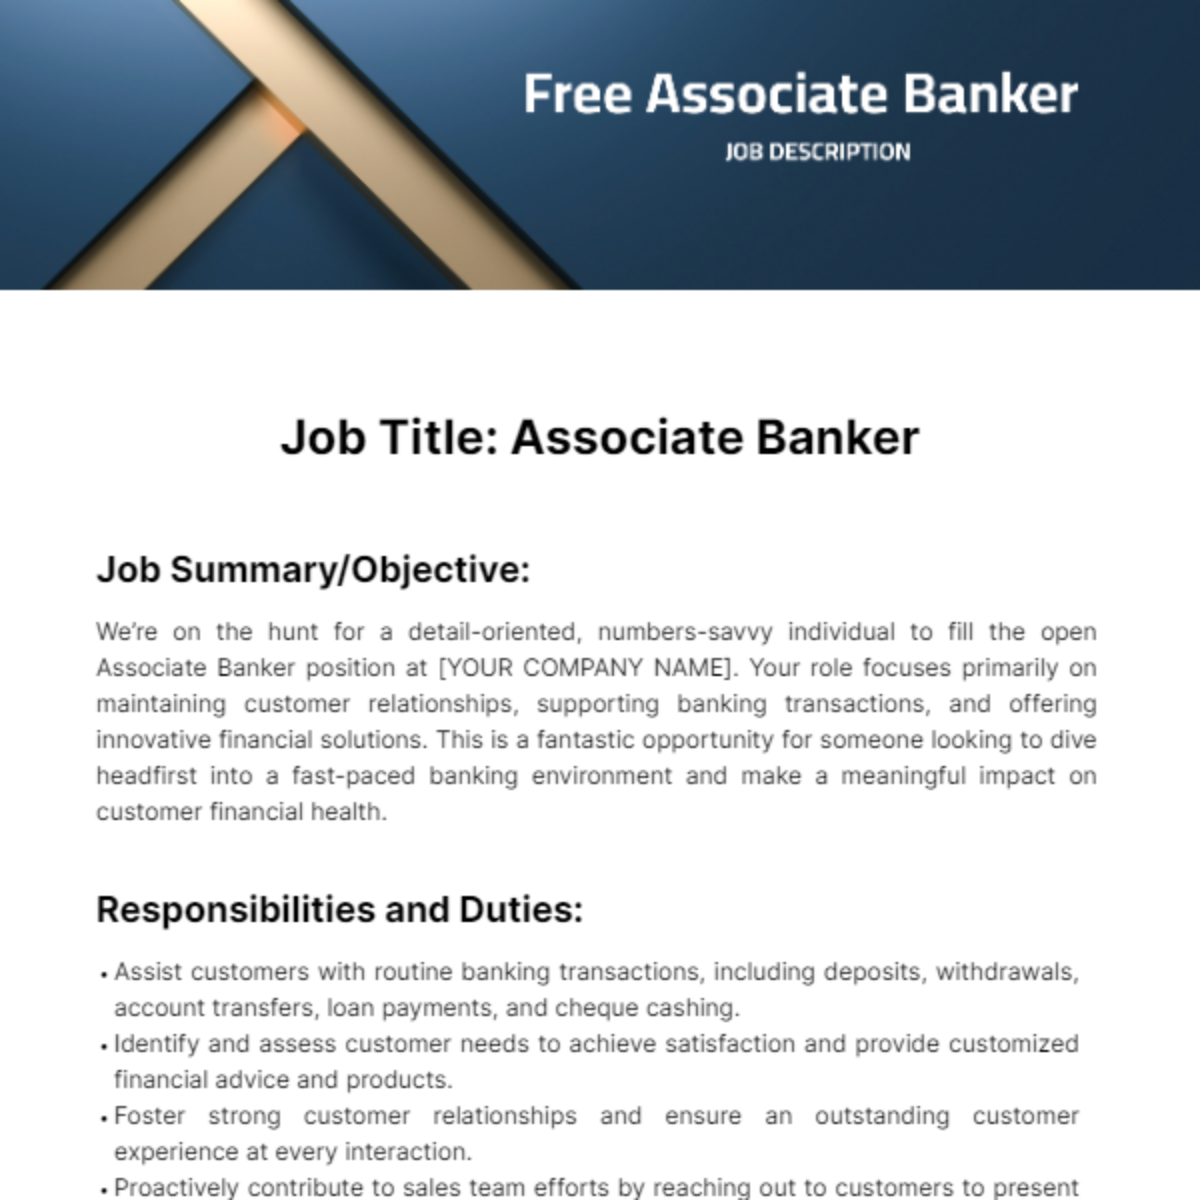 Free Associate Banker Job Description Template